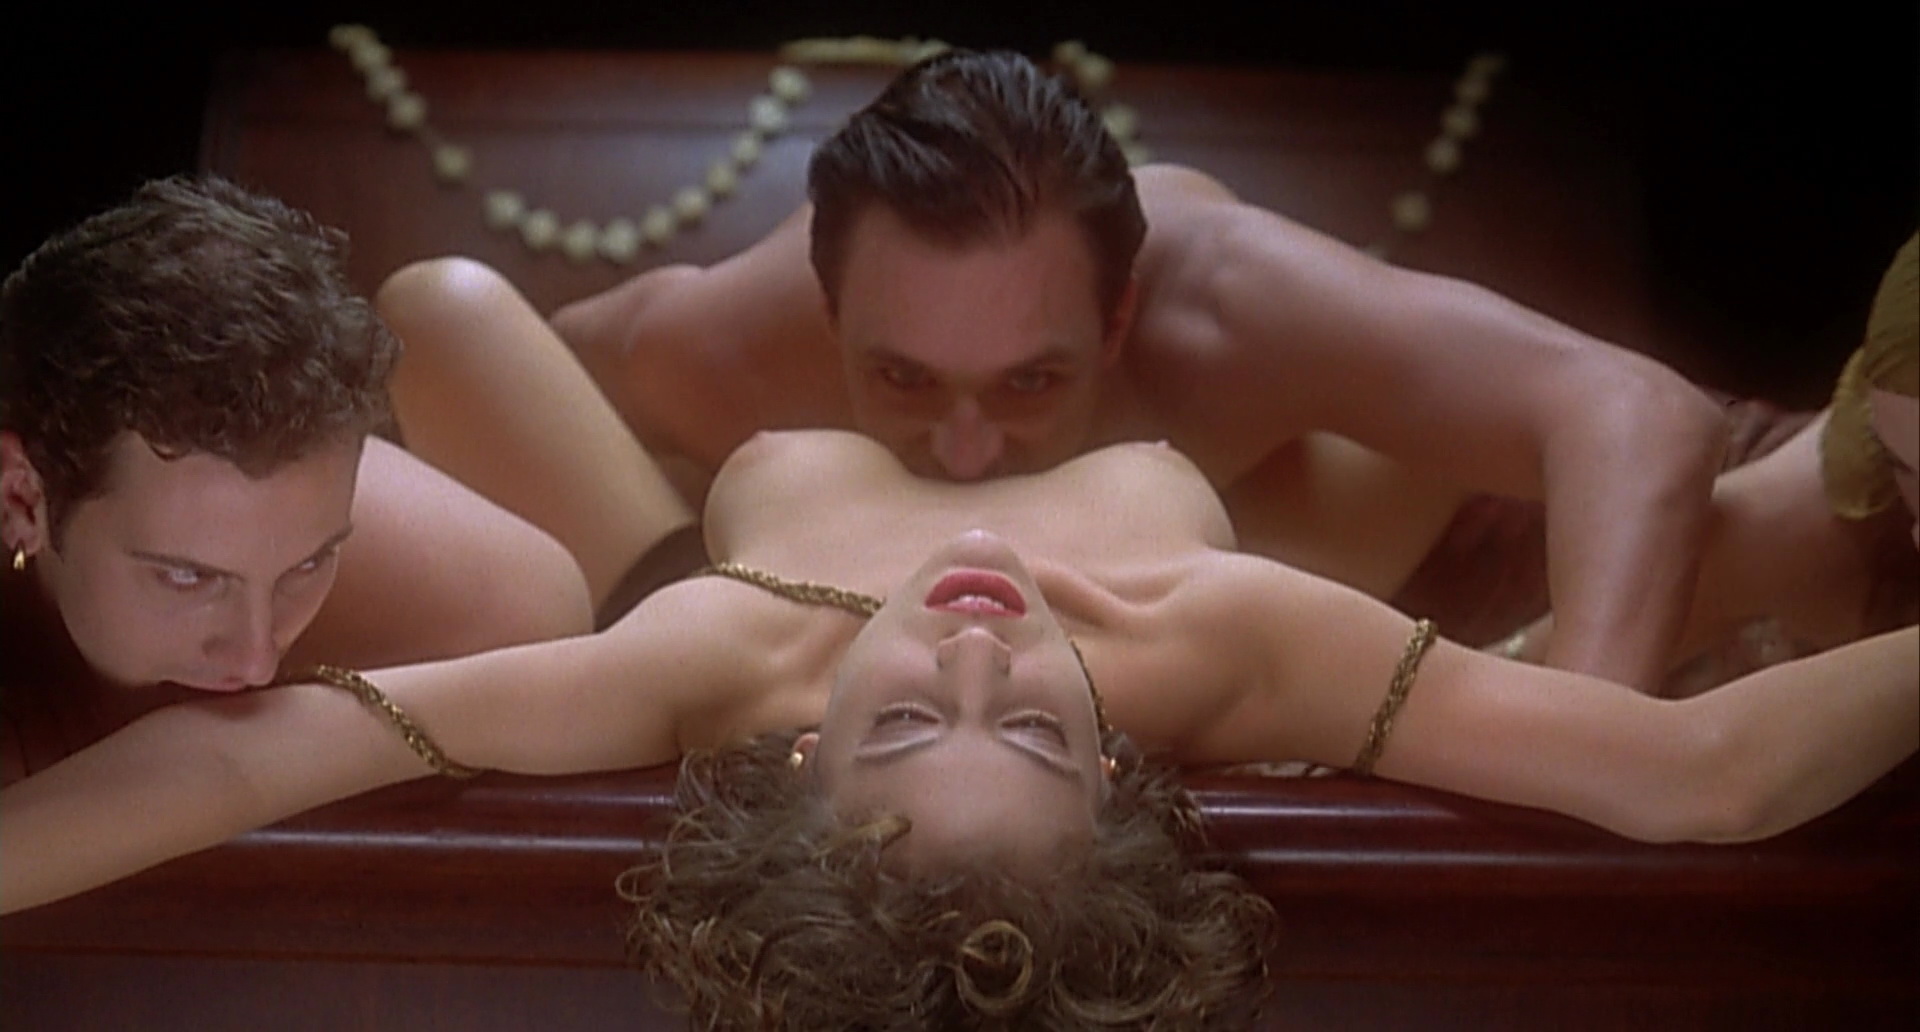 Female vampire sex scene 👉 👌 Modern Vampires Nude Scenes hot